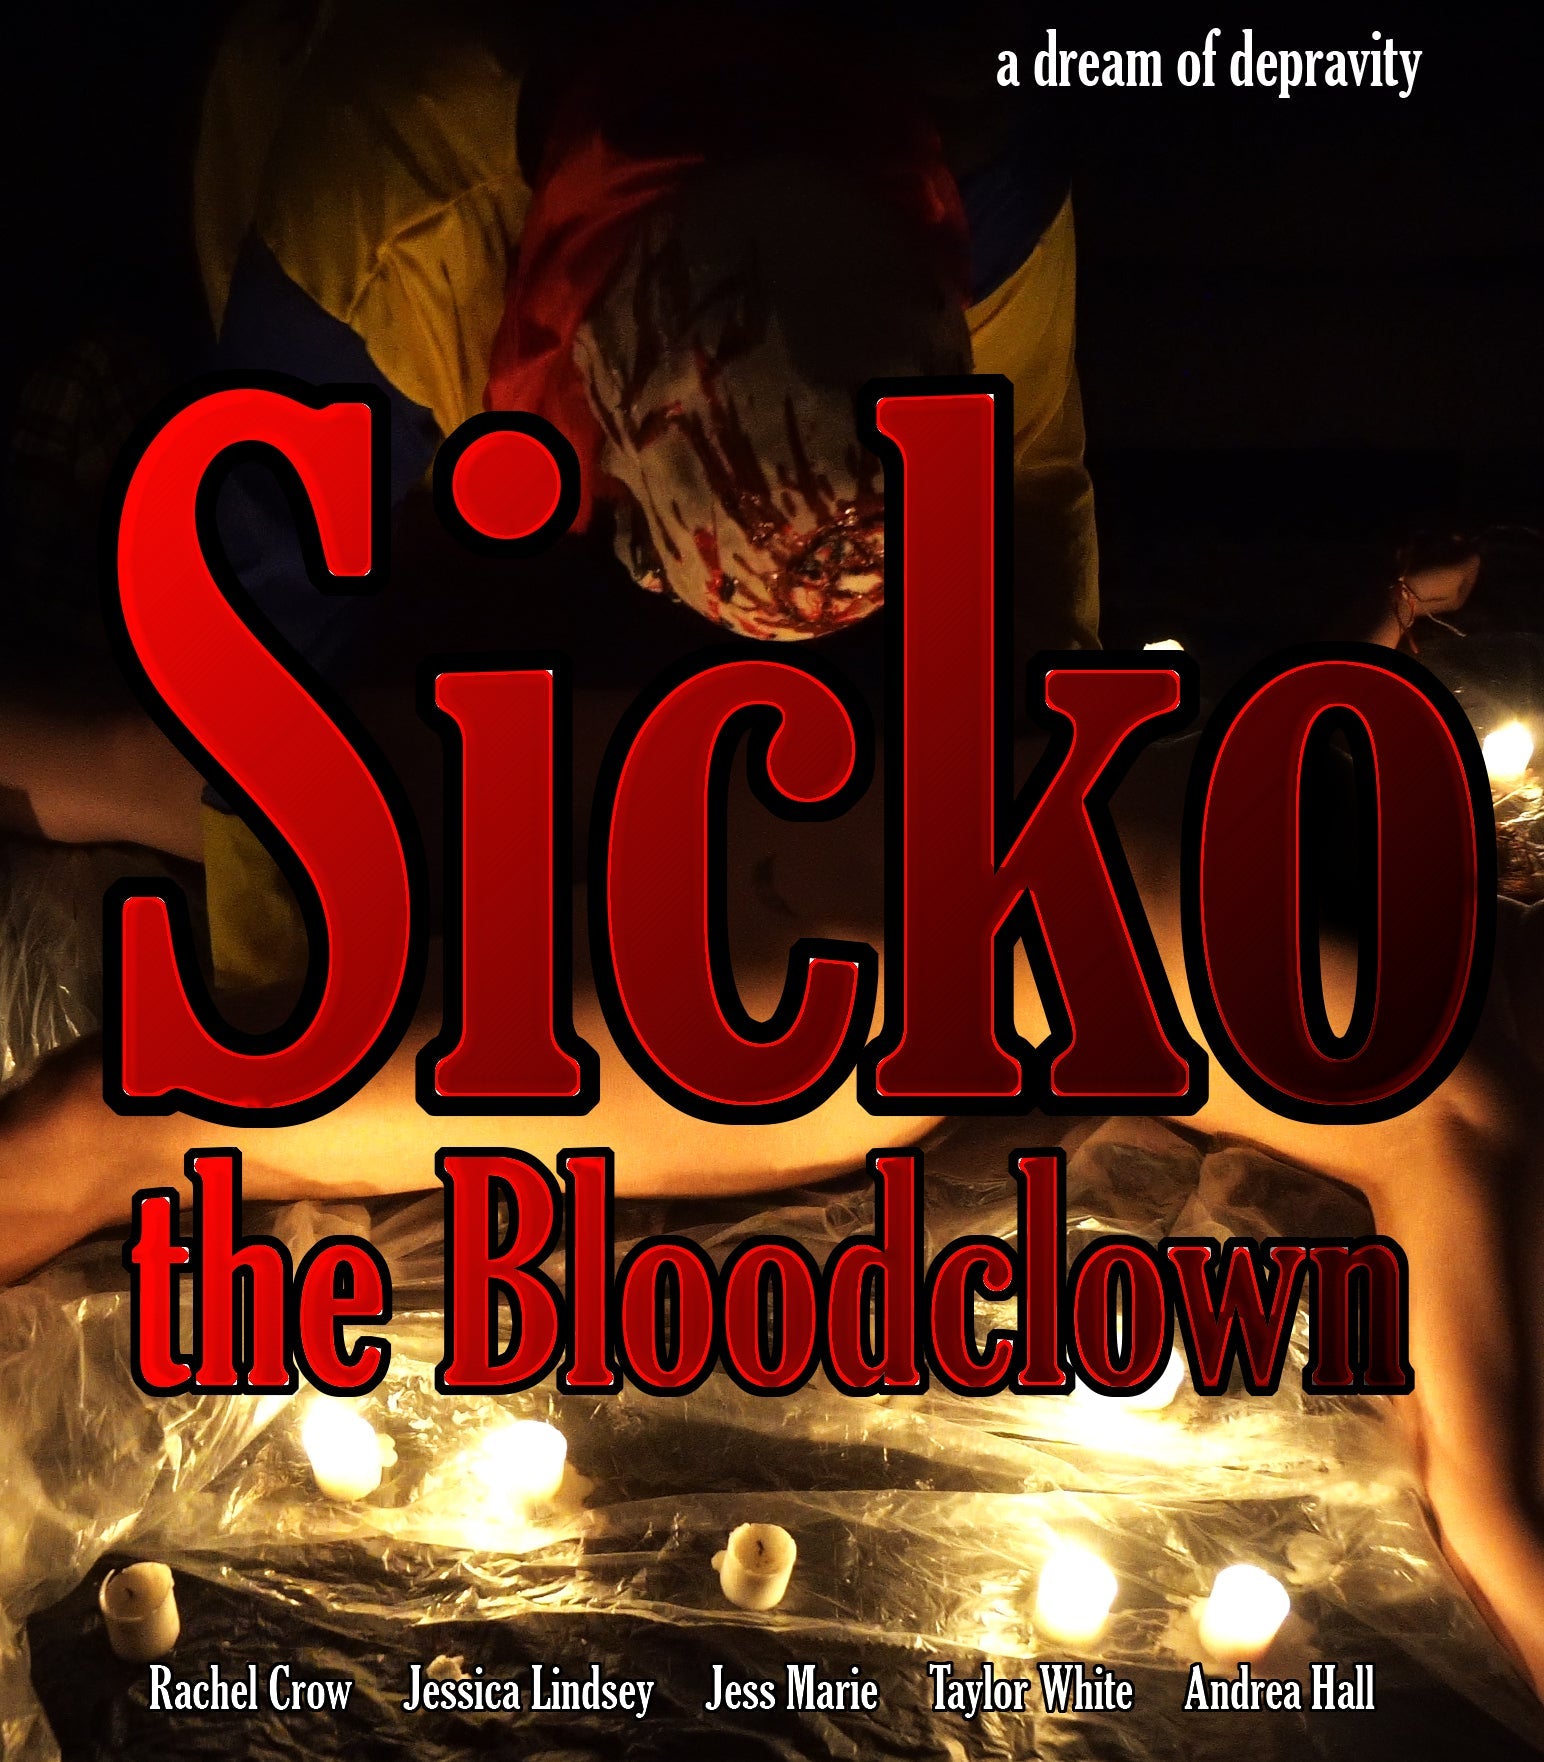 Sicko The Bloodclown Blu-Ray Blu-Ray